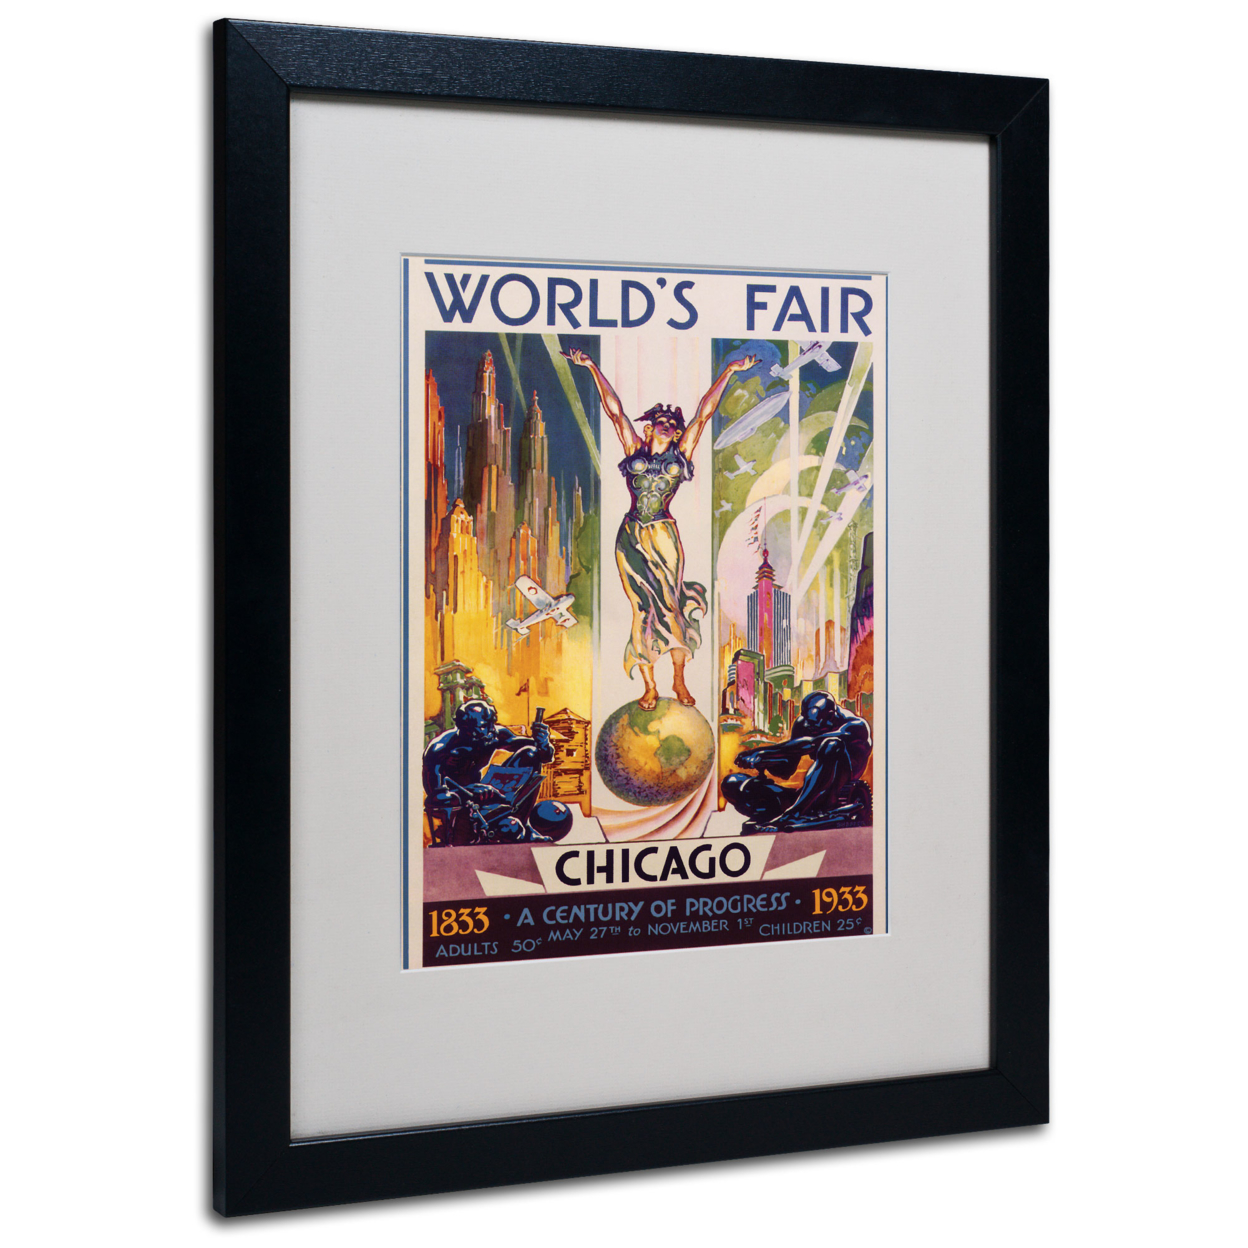 Glen Sheffer 'World's Fair Chicago' Black Wooden Framed Art 18 X 22 Inches